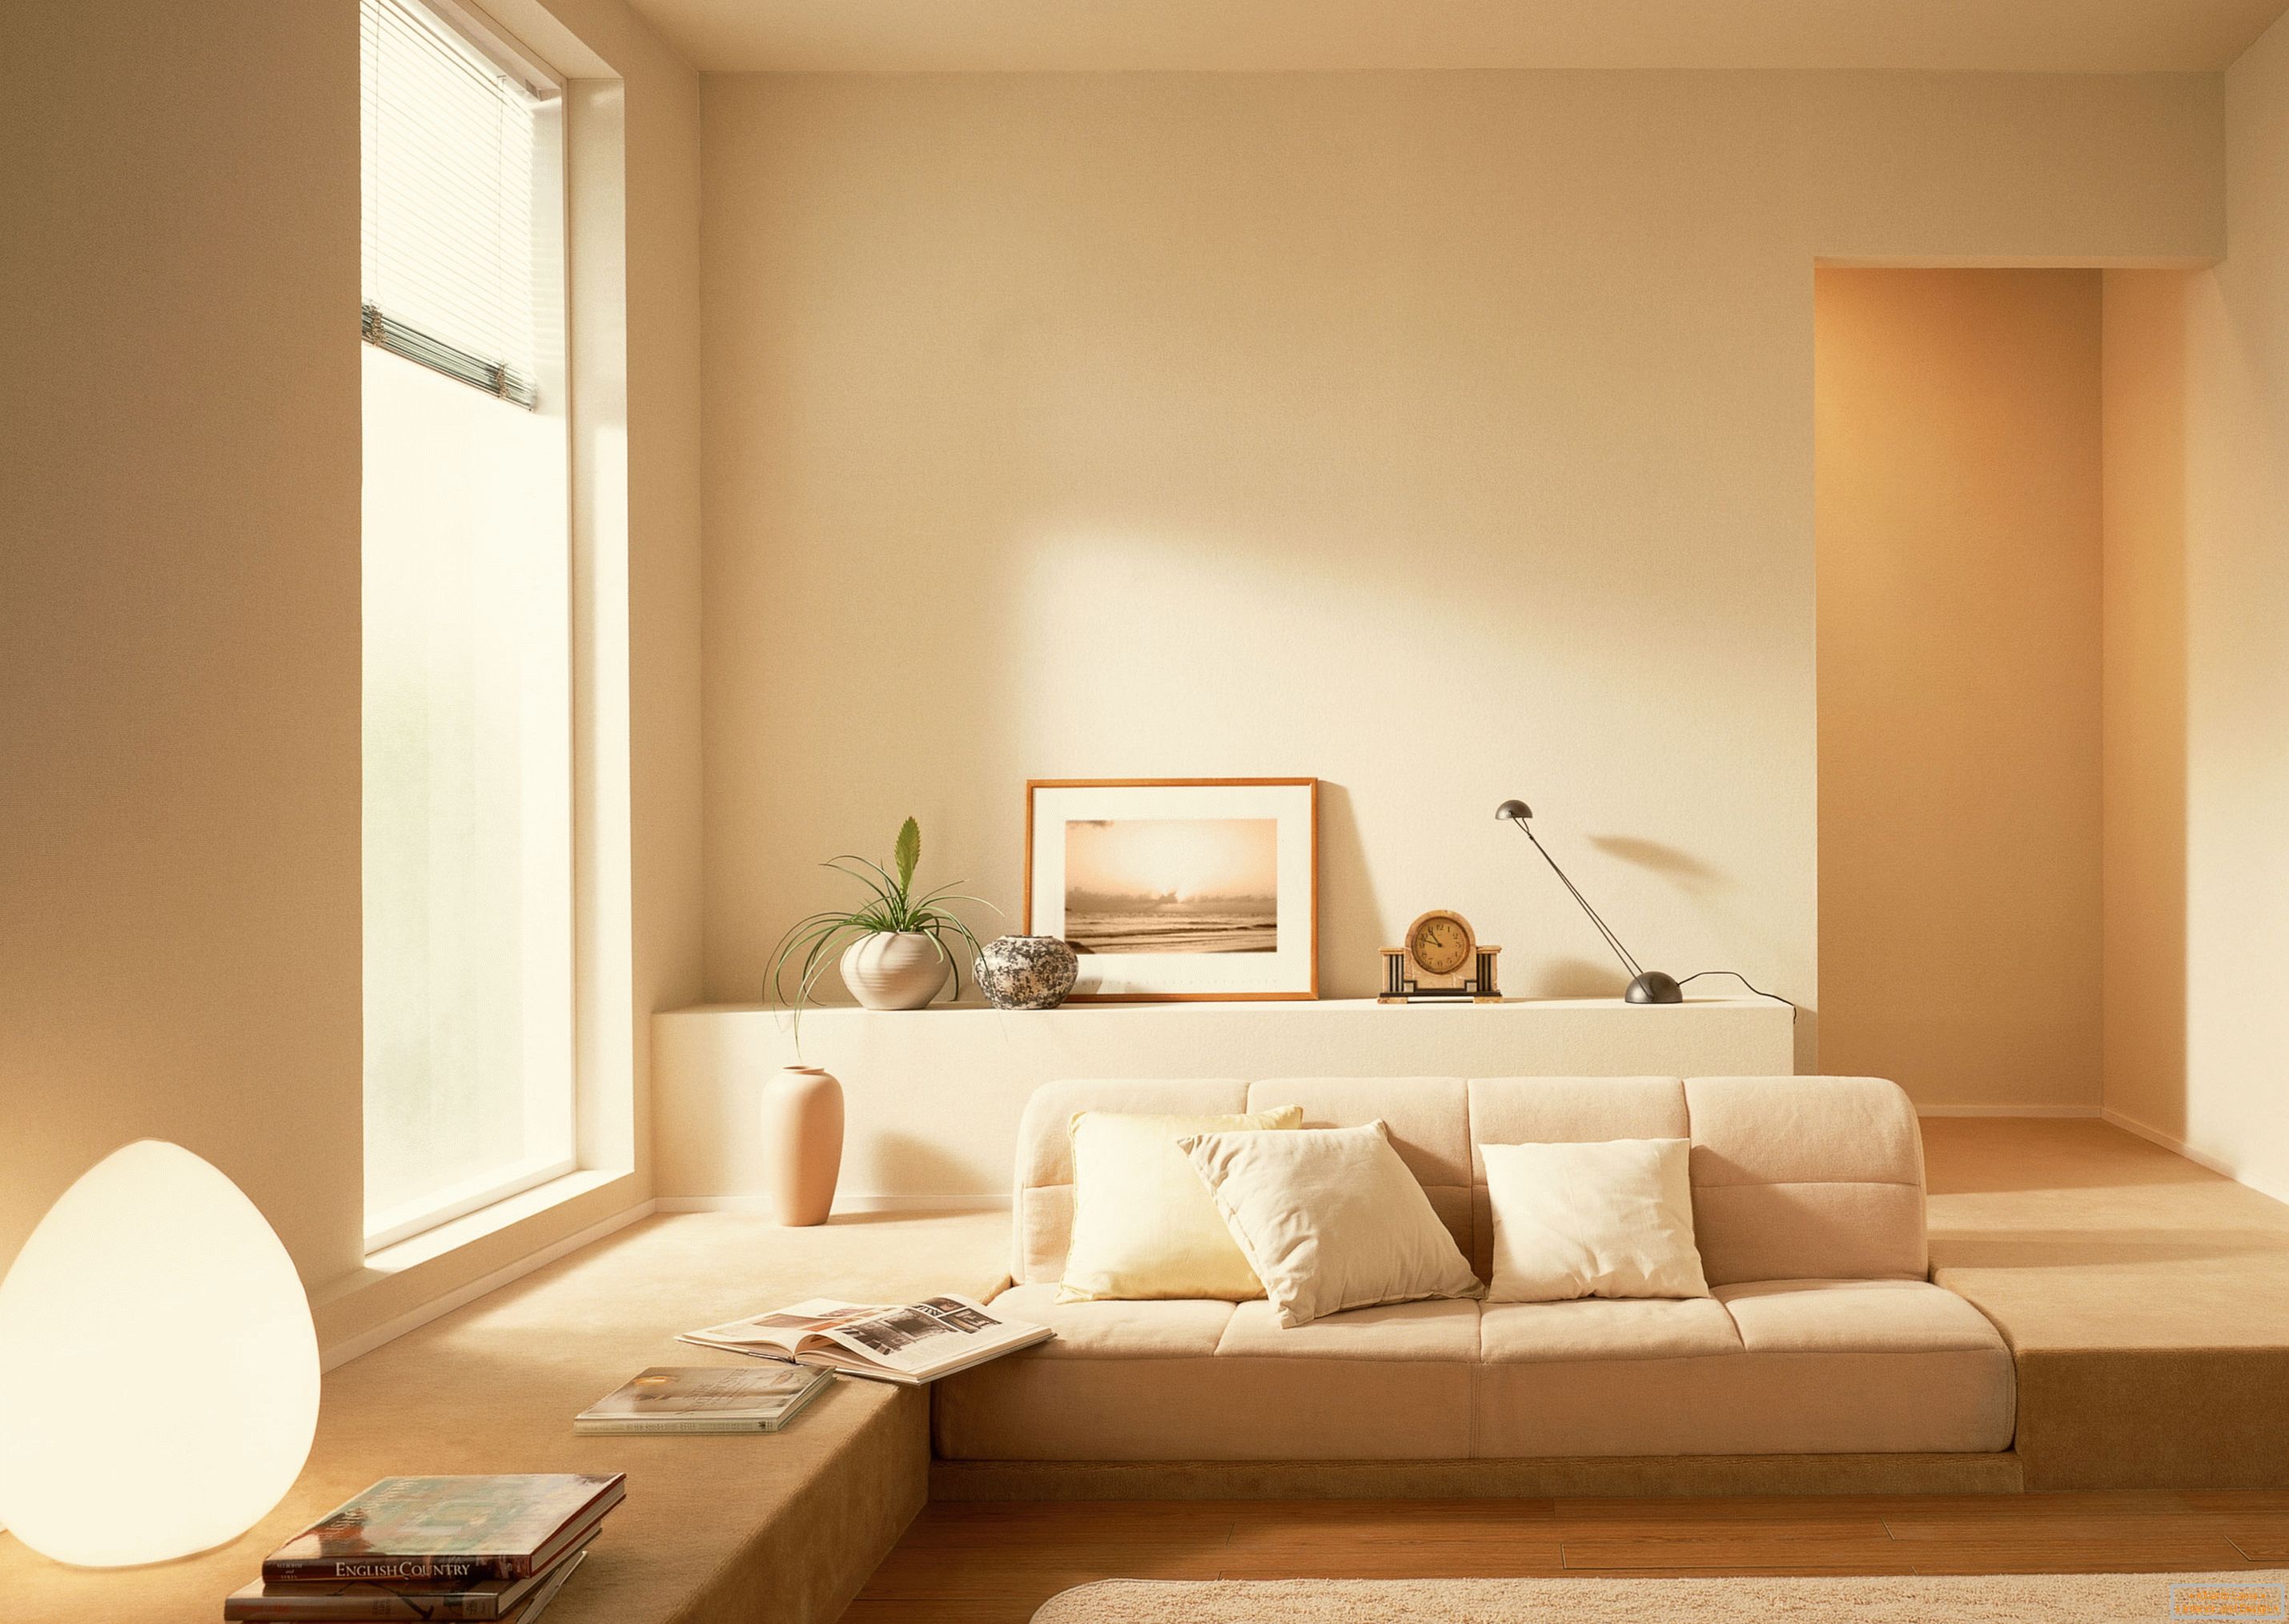 V souladu se stylem minimalismu byl pro zorganizování interiéru obývacího pokoje používán klidný béžový odstín.